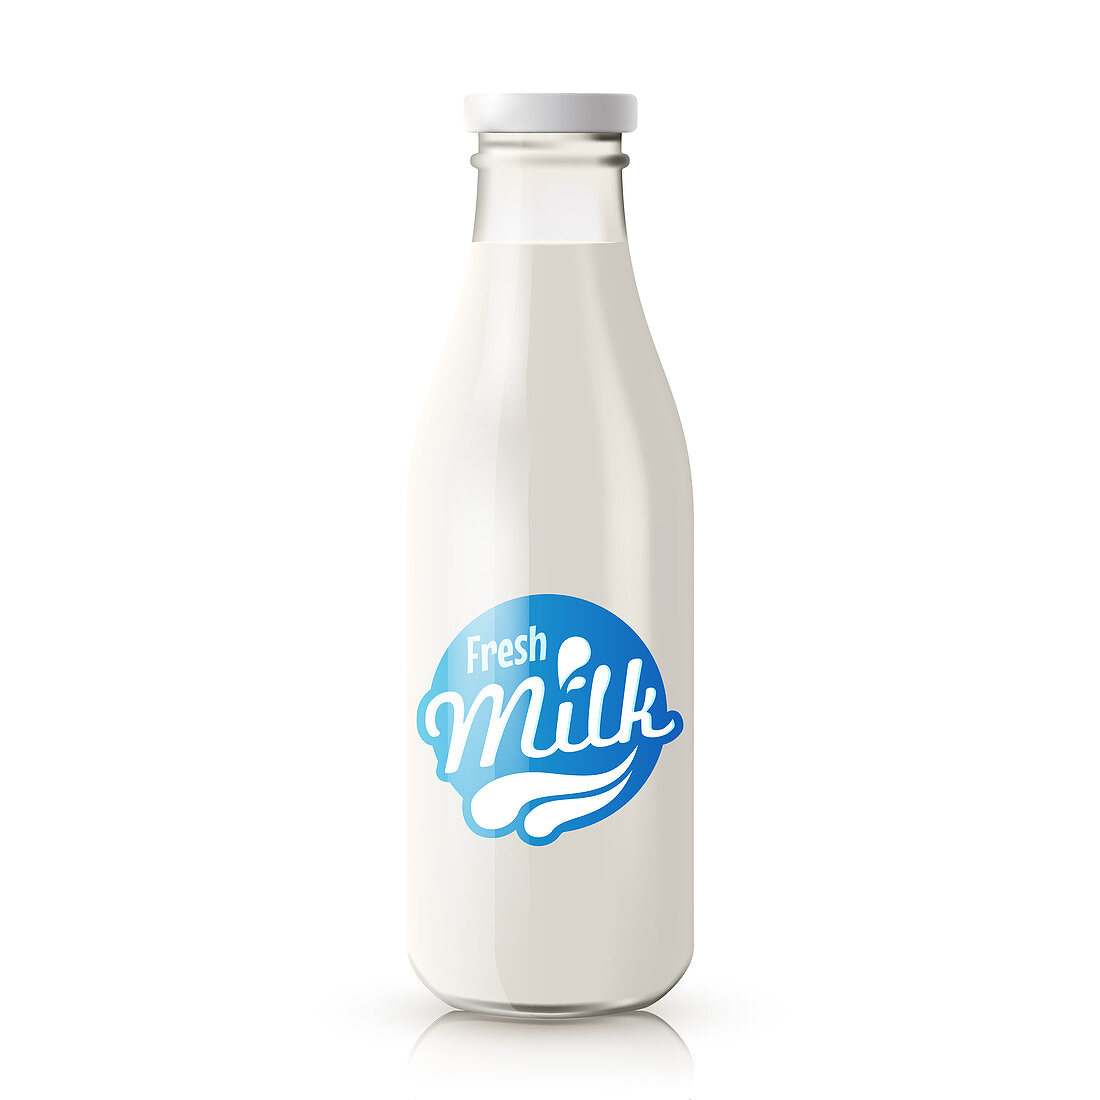 Milk in bottle, illustration